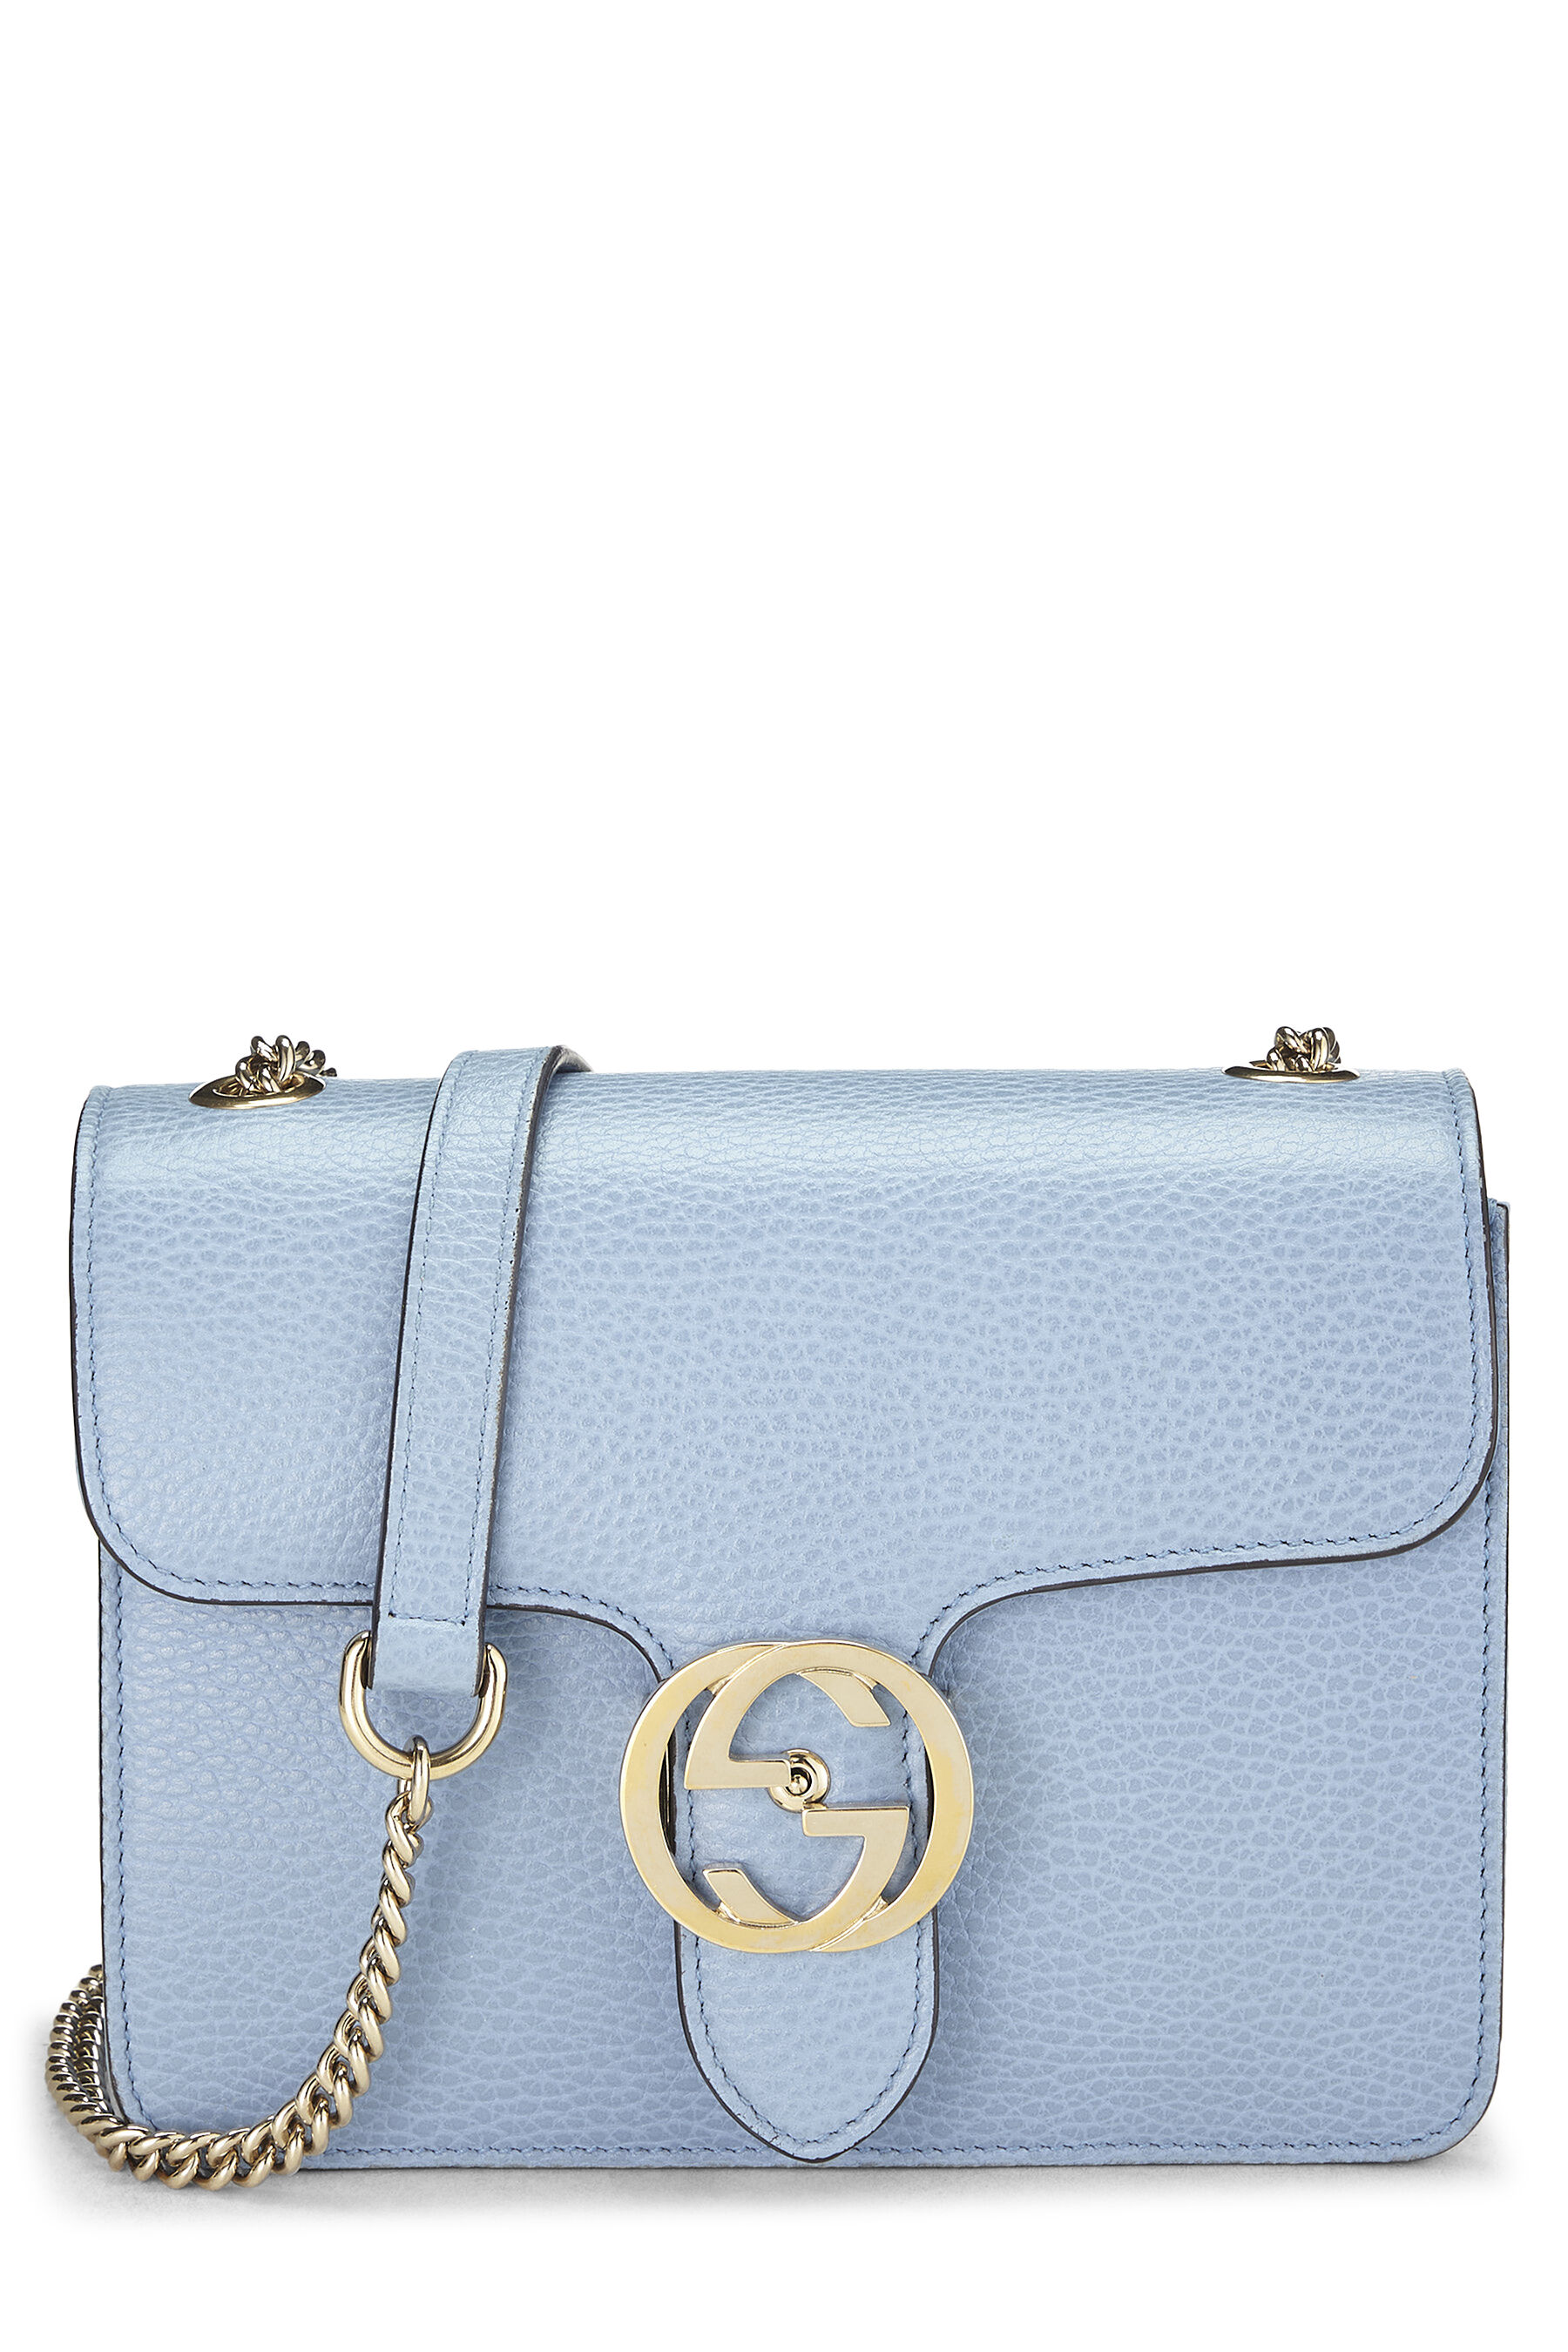 Gucci Blue Leather Interlocking Shoulder Bag